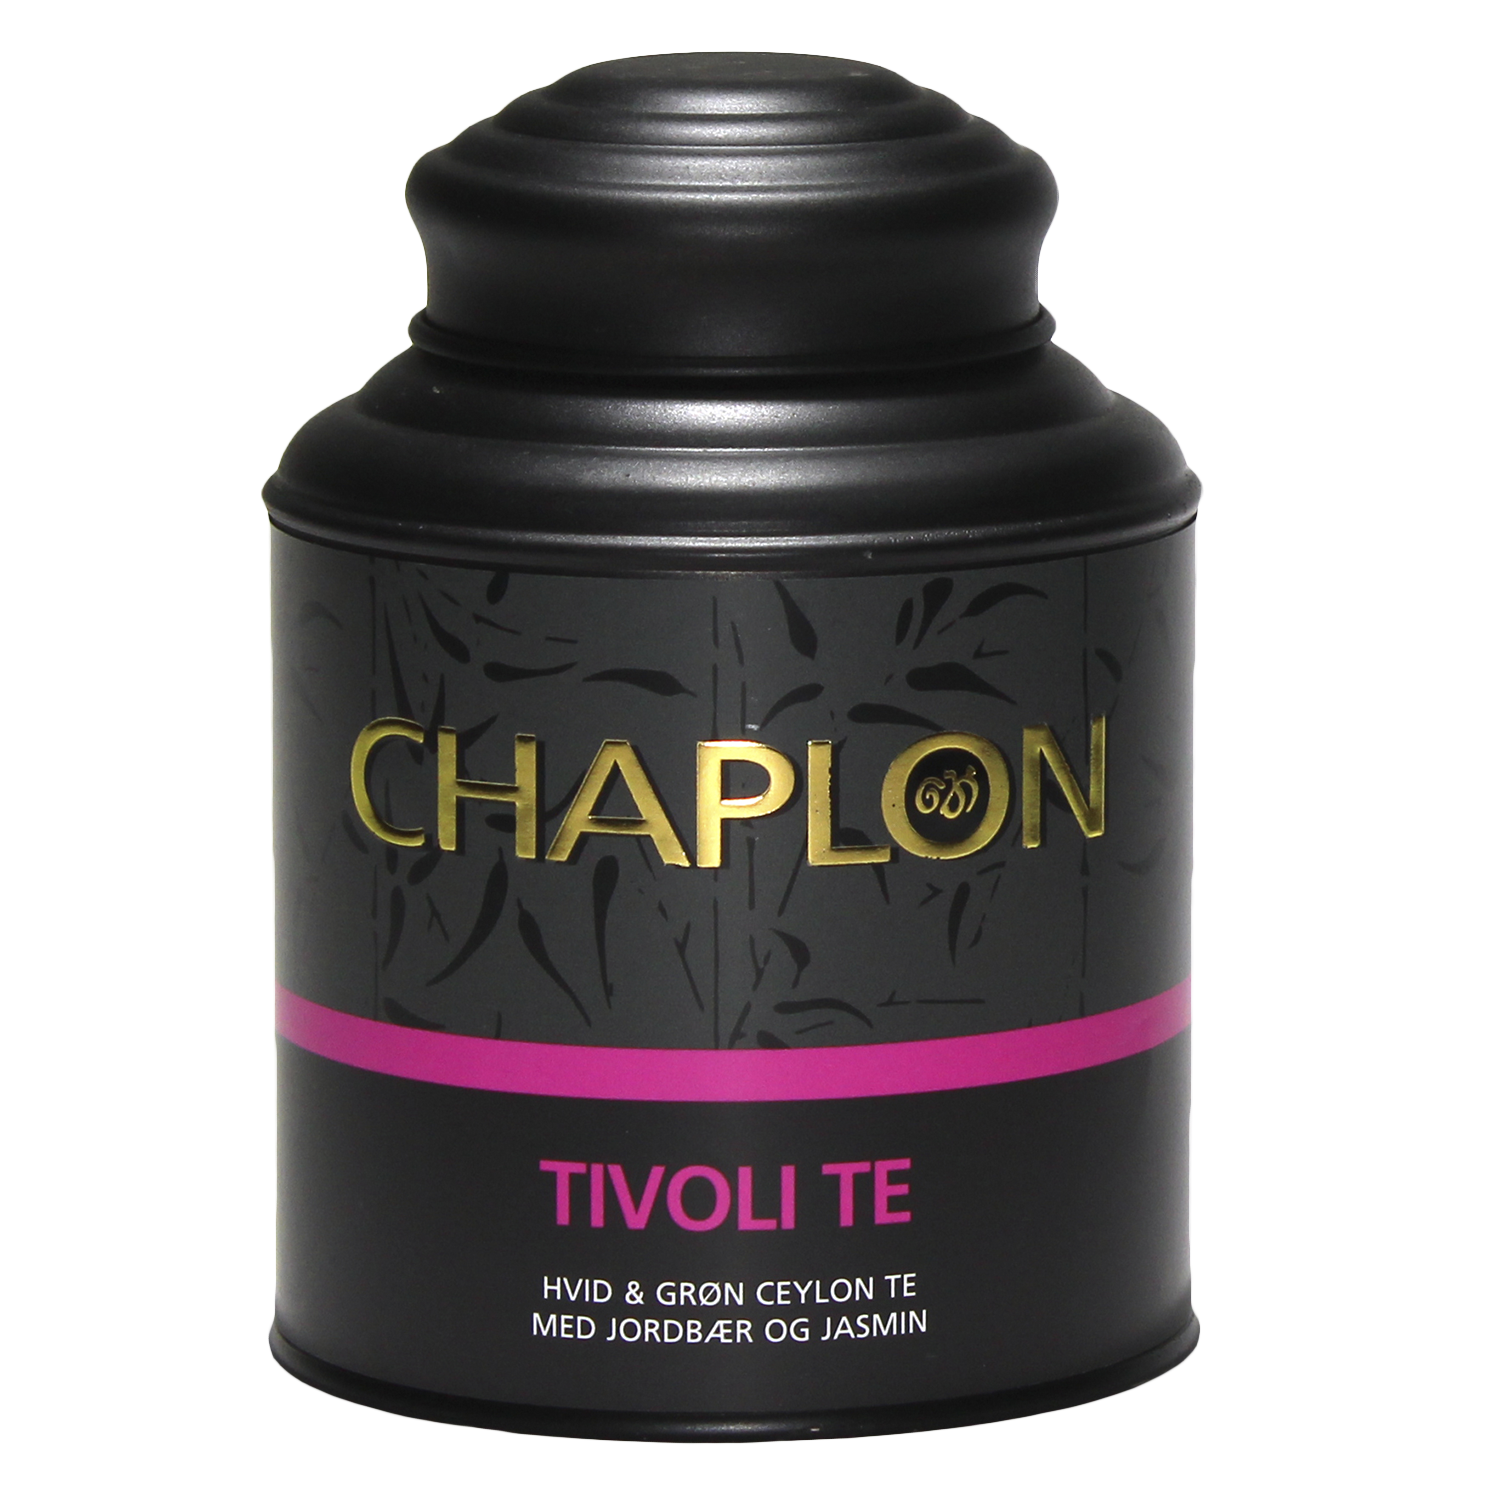 Chaplon Te Hvid / Grøn Tivoli 160g